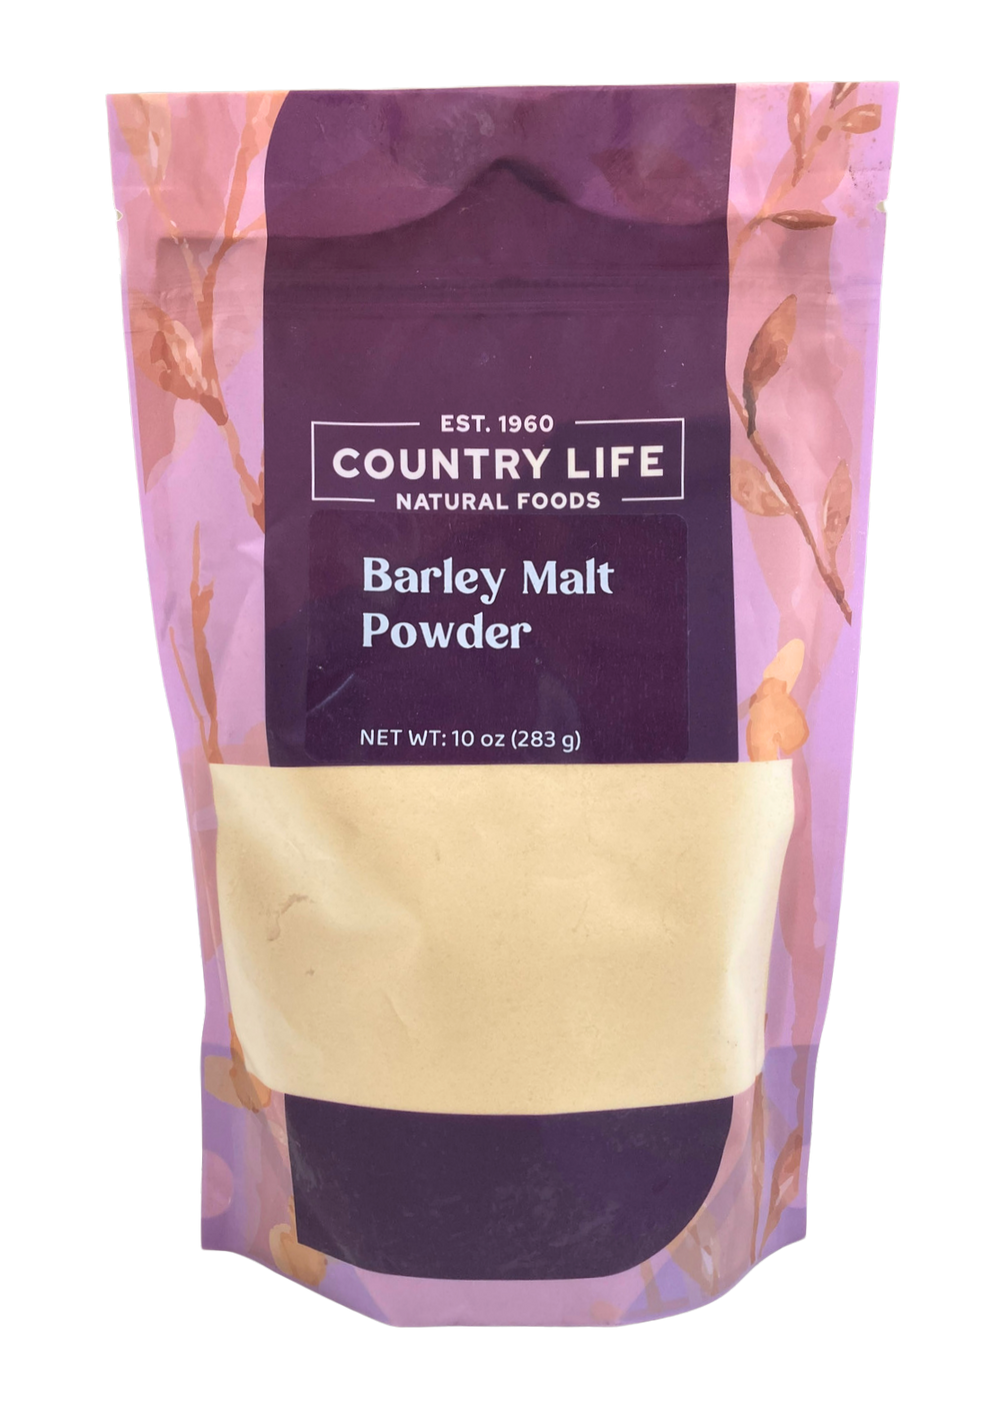 Barley Malt Powder - Country Life Natural Foods